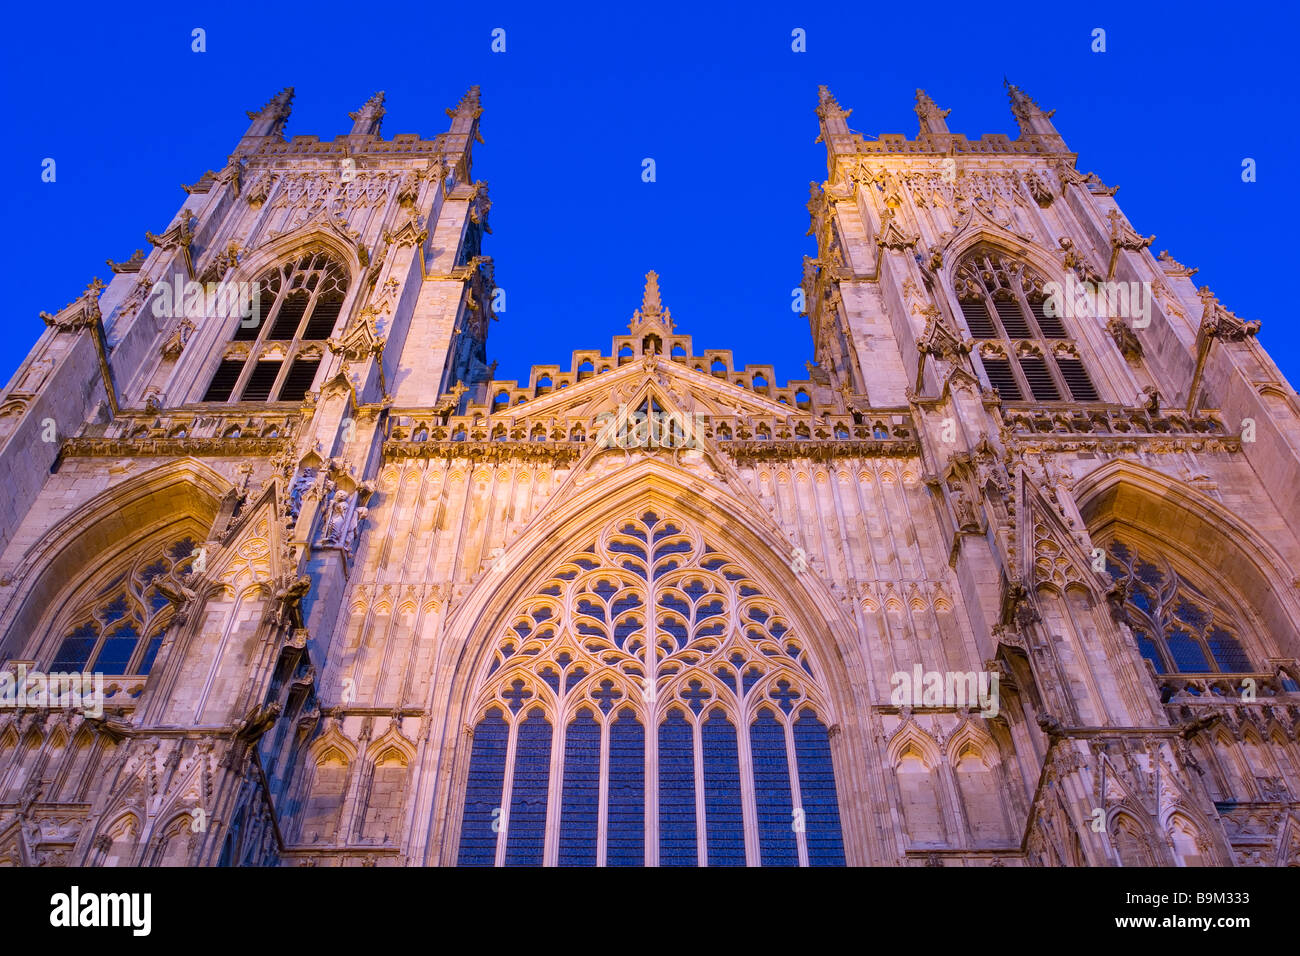 La grande fenêtre de l'Ouest et les deux tours de l'ouest de York Minster Cathédrale gothique dans la soirée Banque D'Images